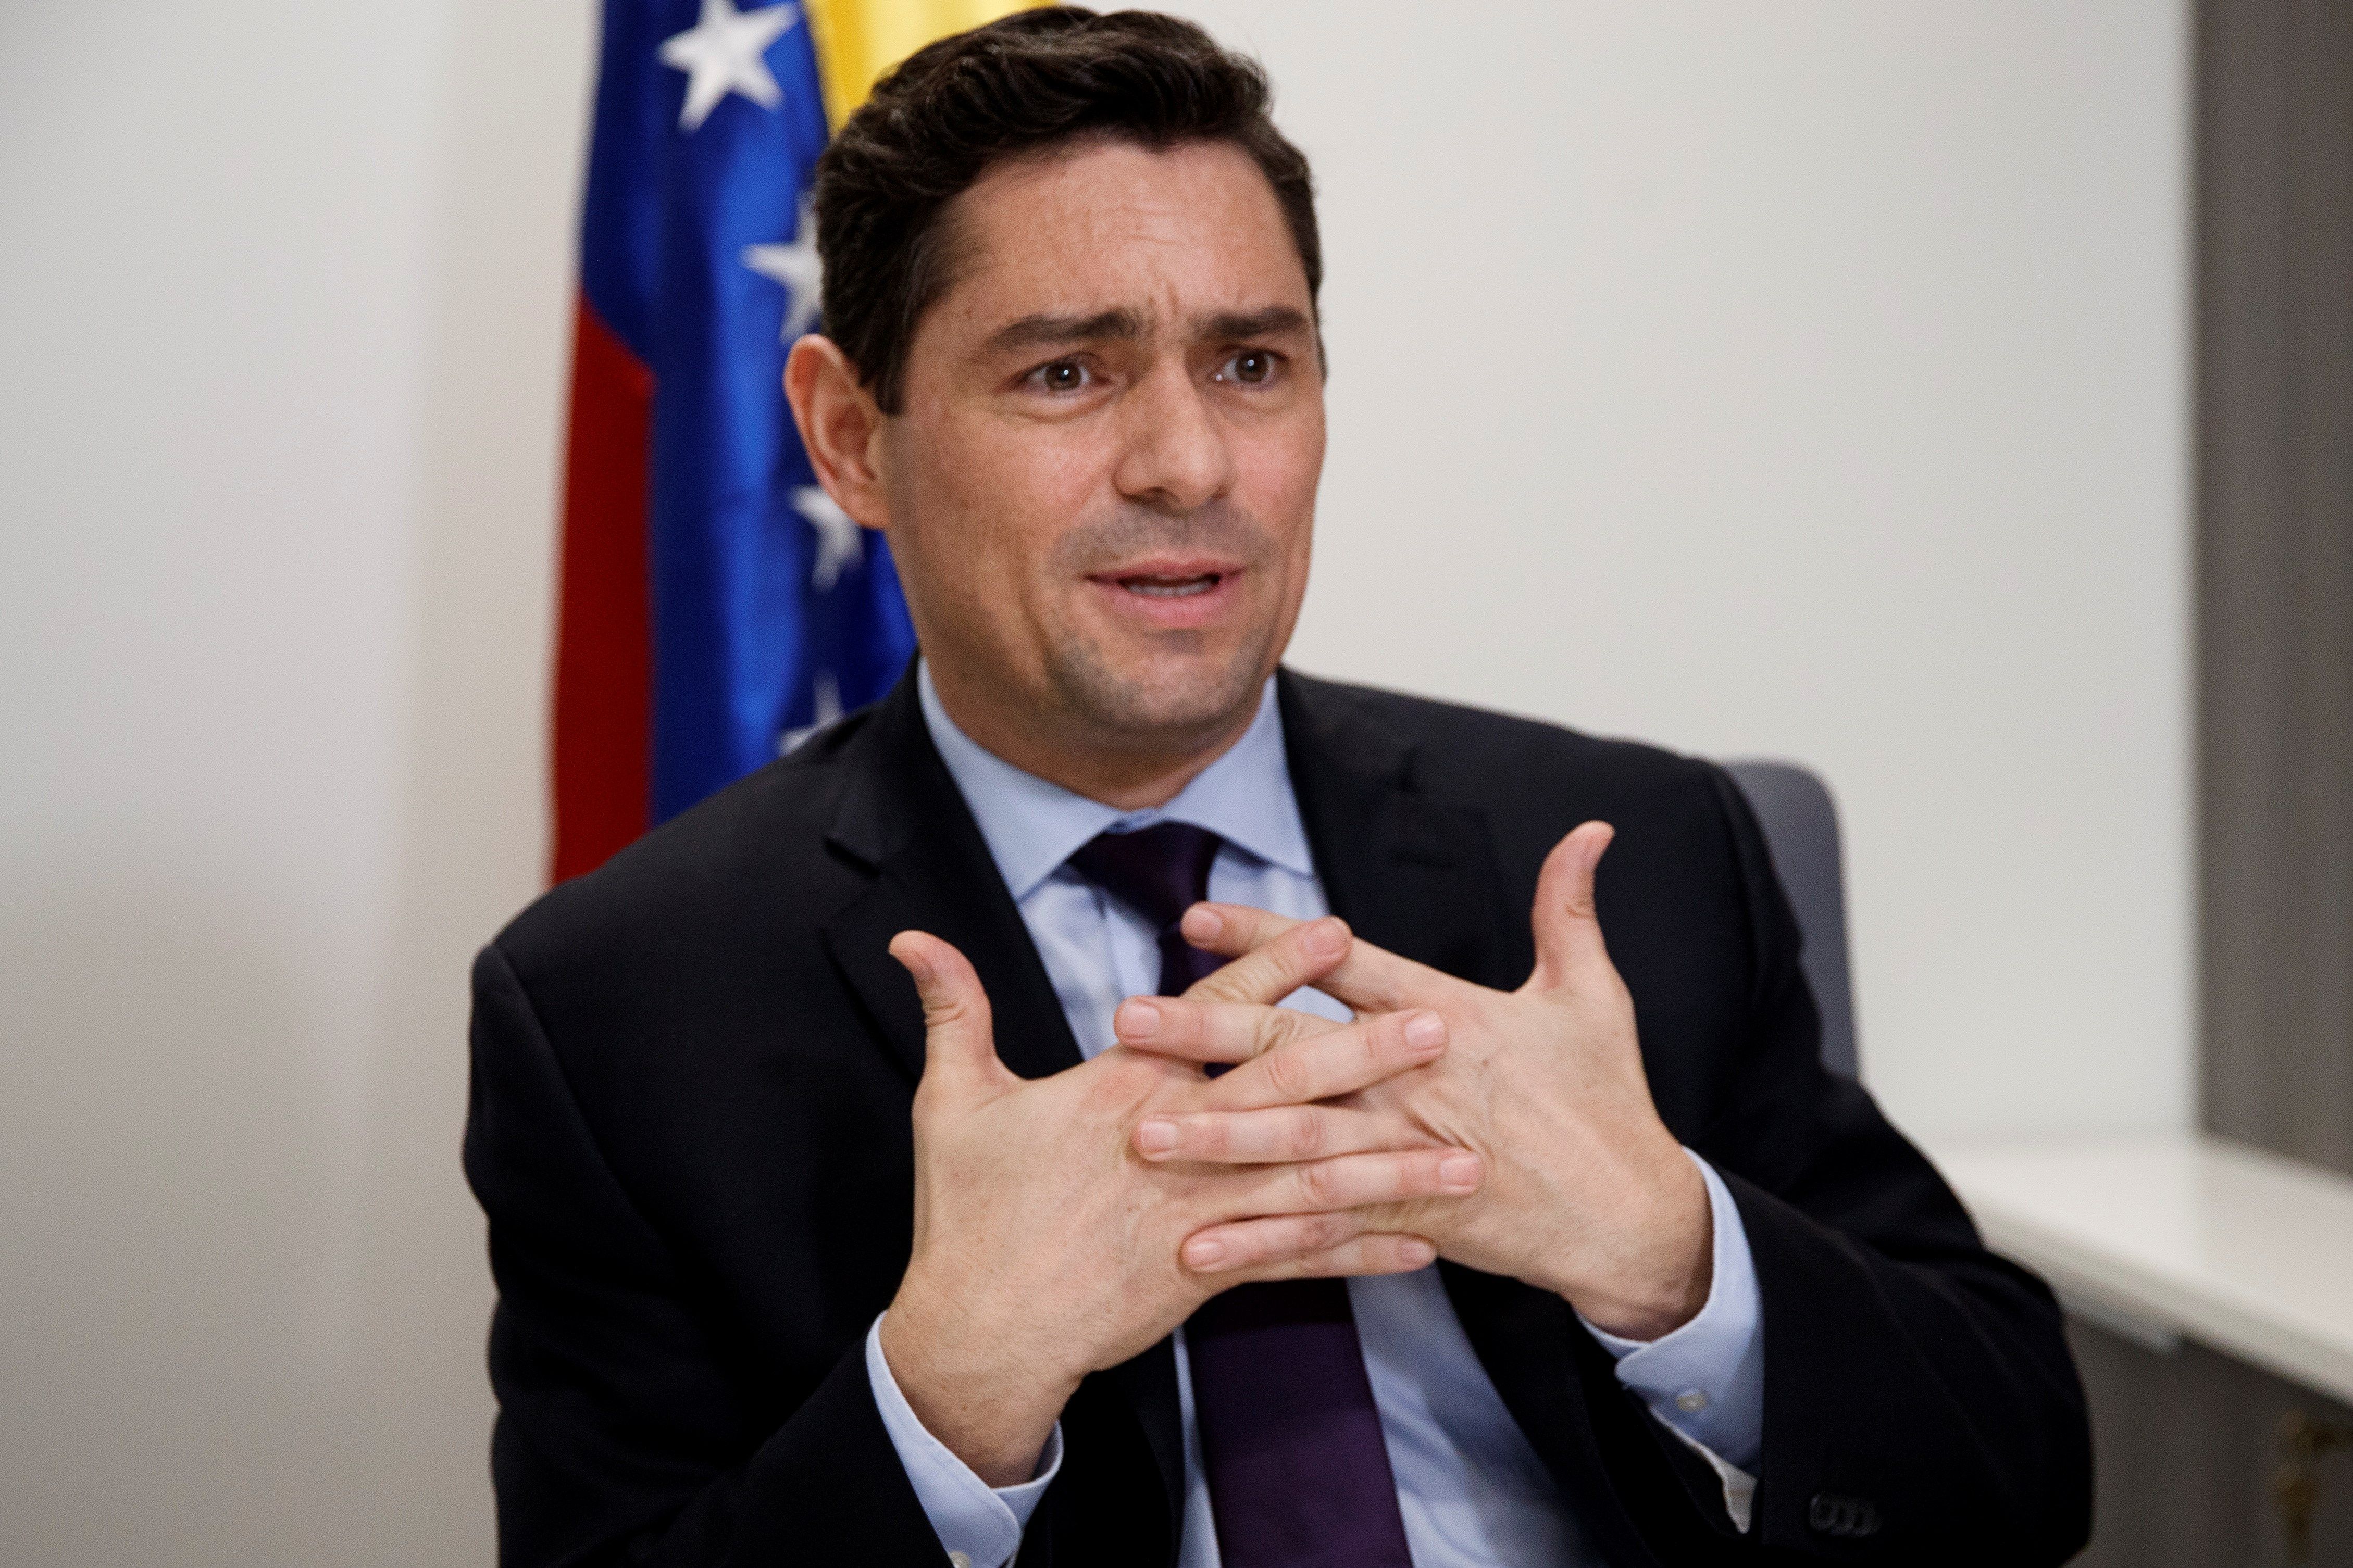 Embajador Carlos Vecchio dice ¡no! A bonos 2020 emitidos por Maduro